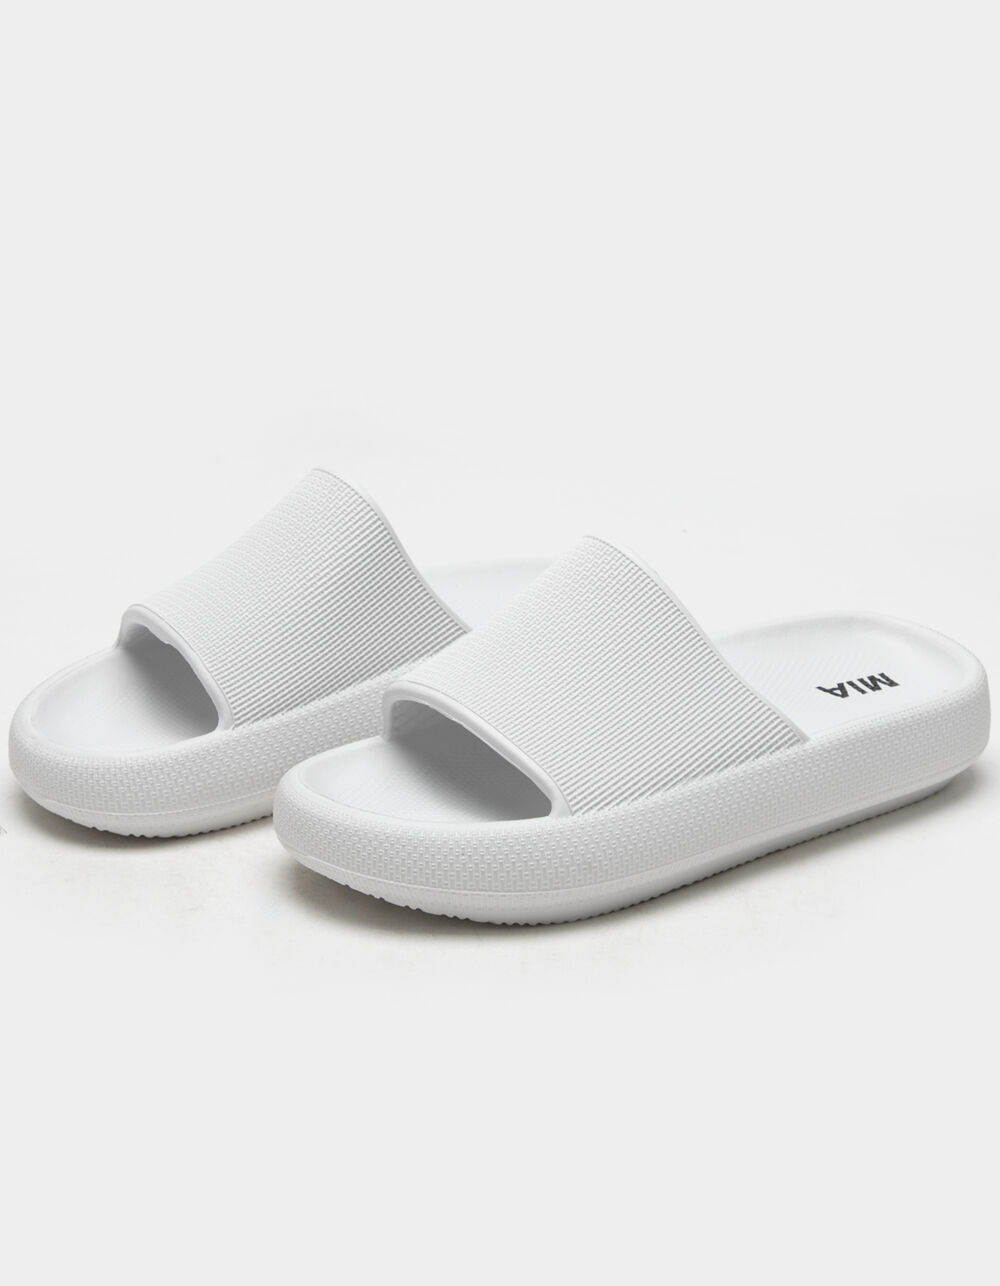 MIA Lexa Womens White Slide Sandals